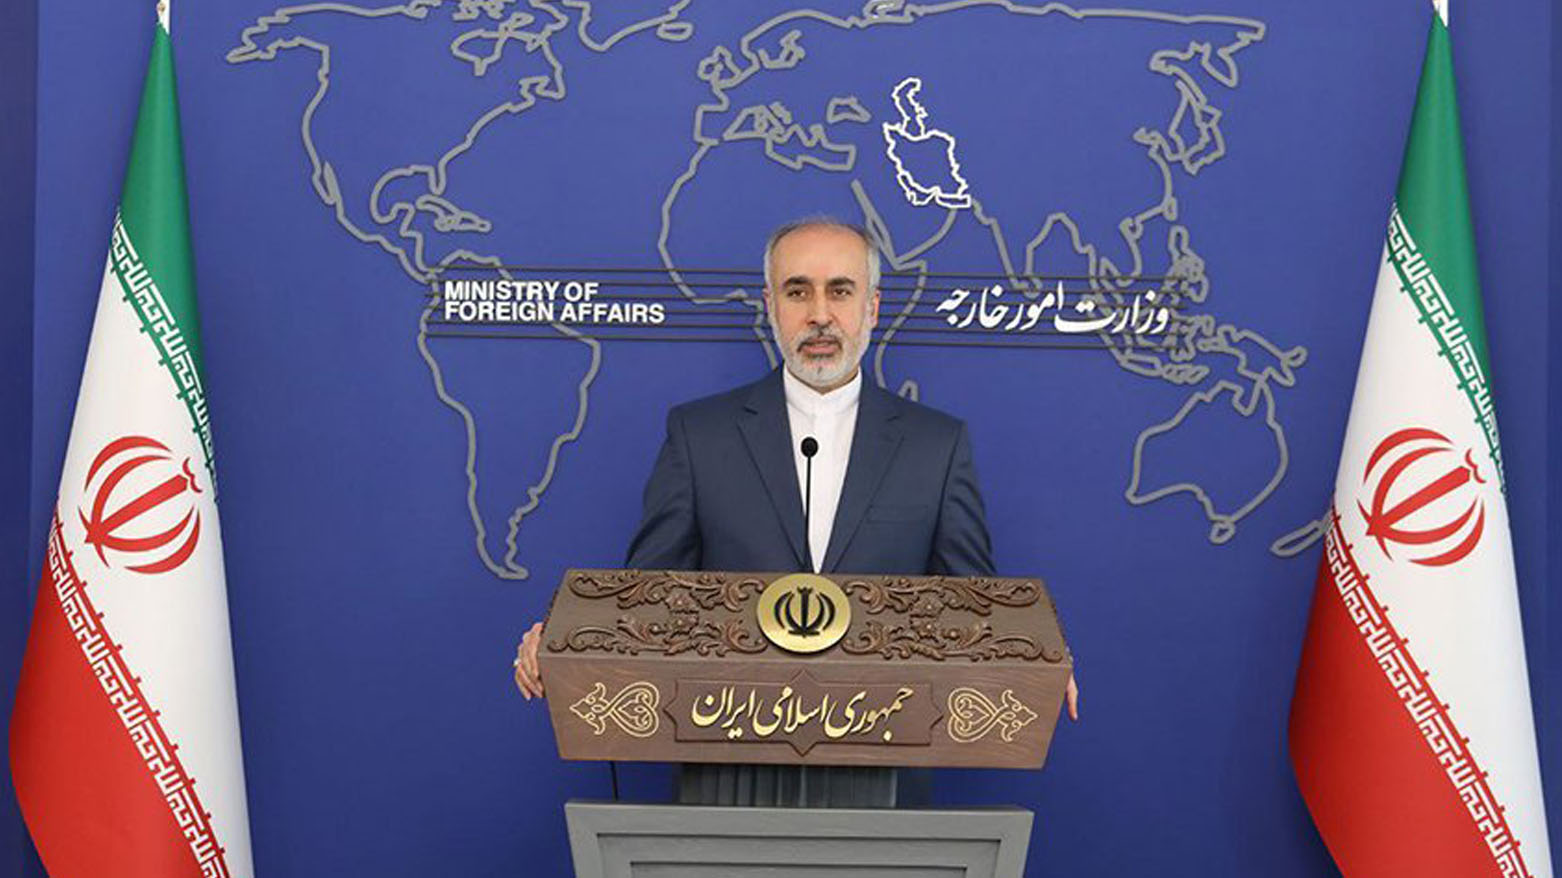 ناصر کنعانی، سخنگوی وزارت امور خارجه  ایران